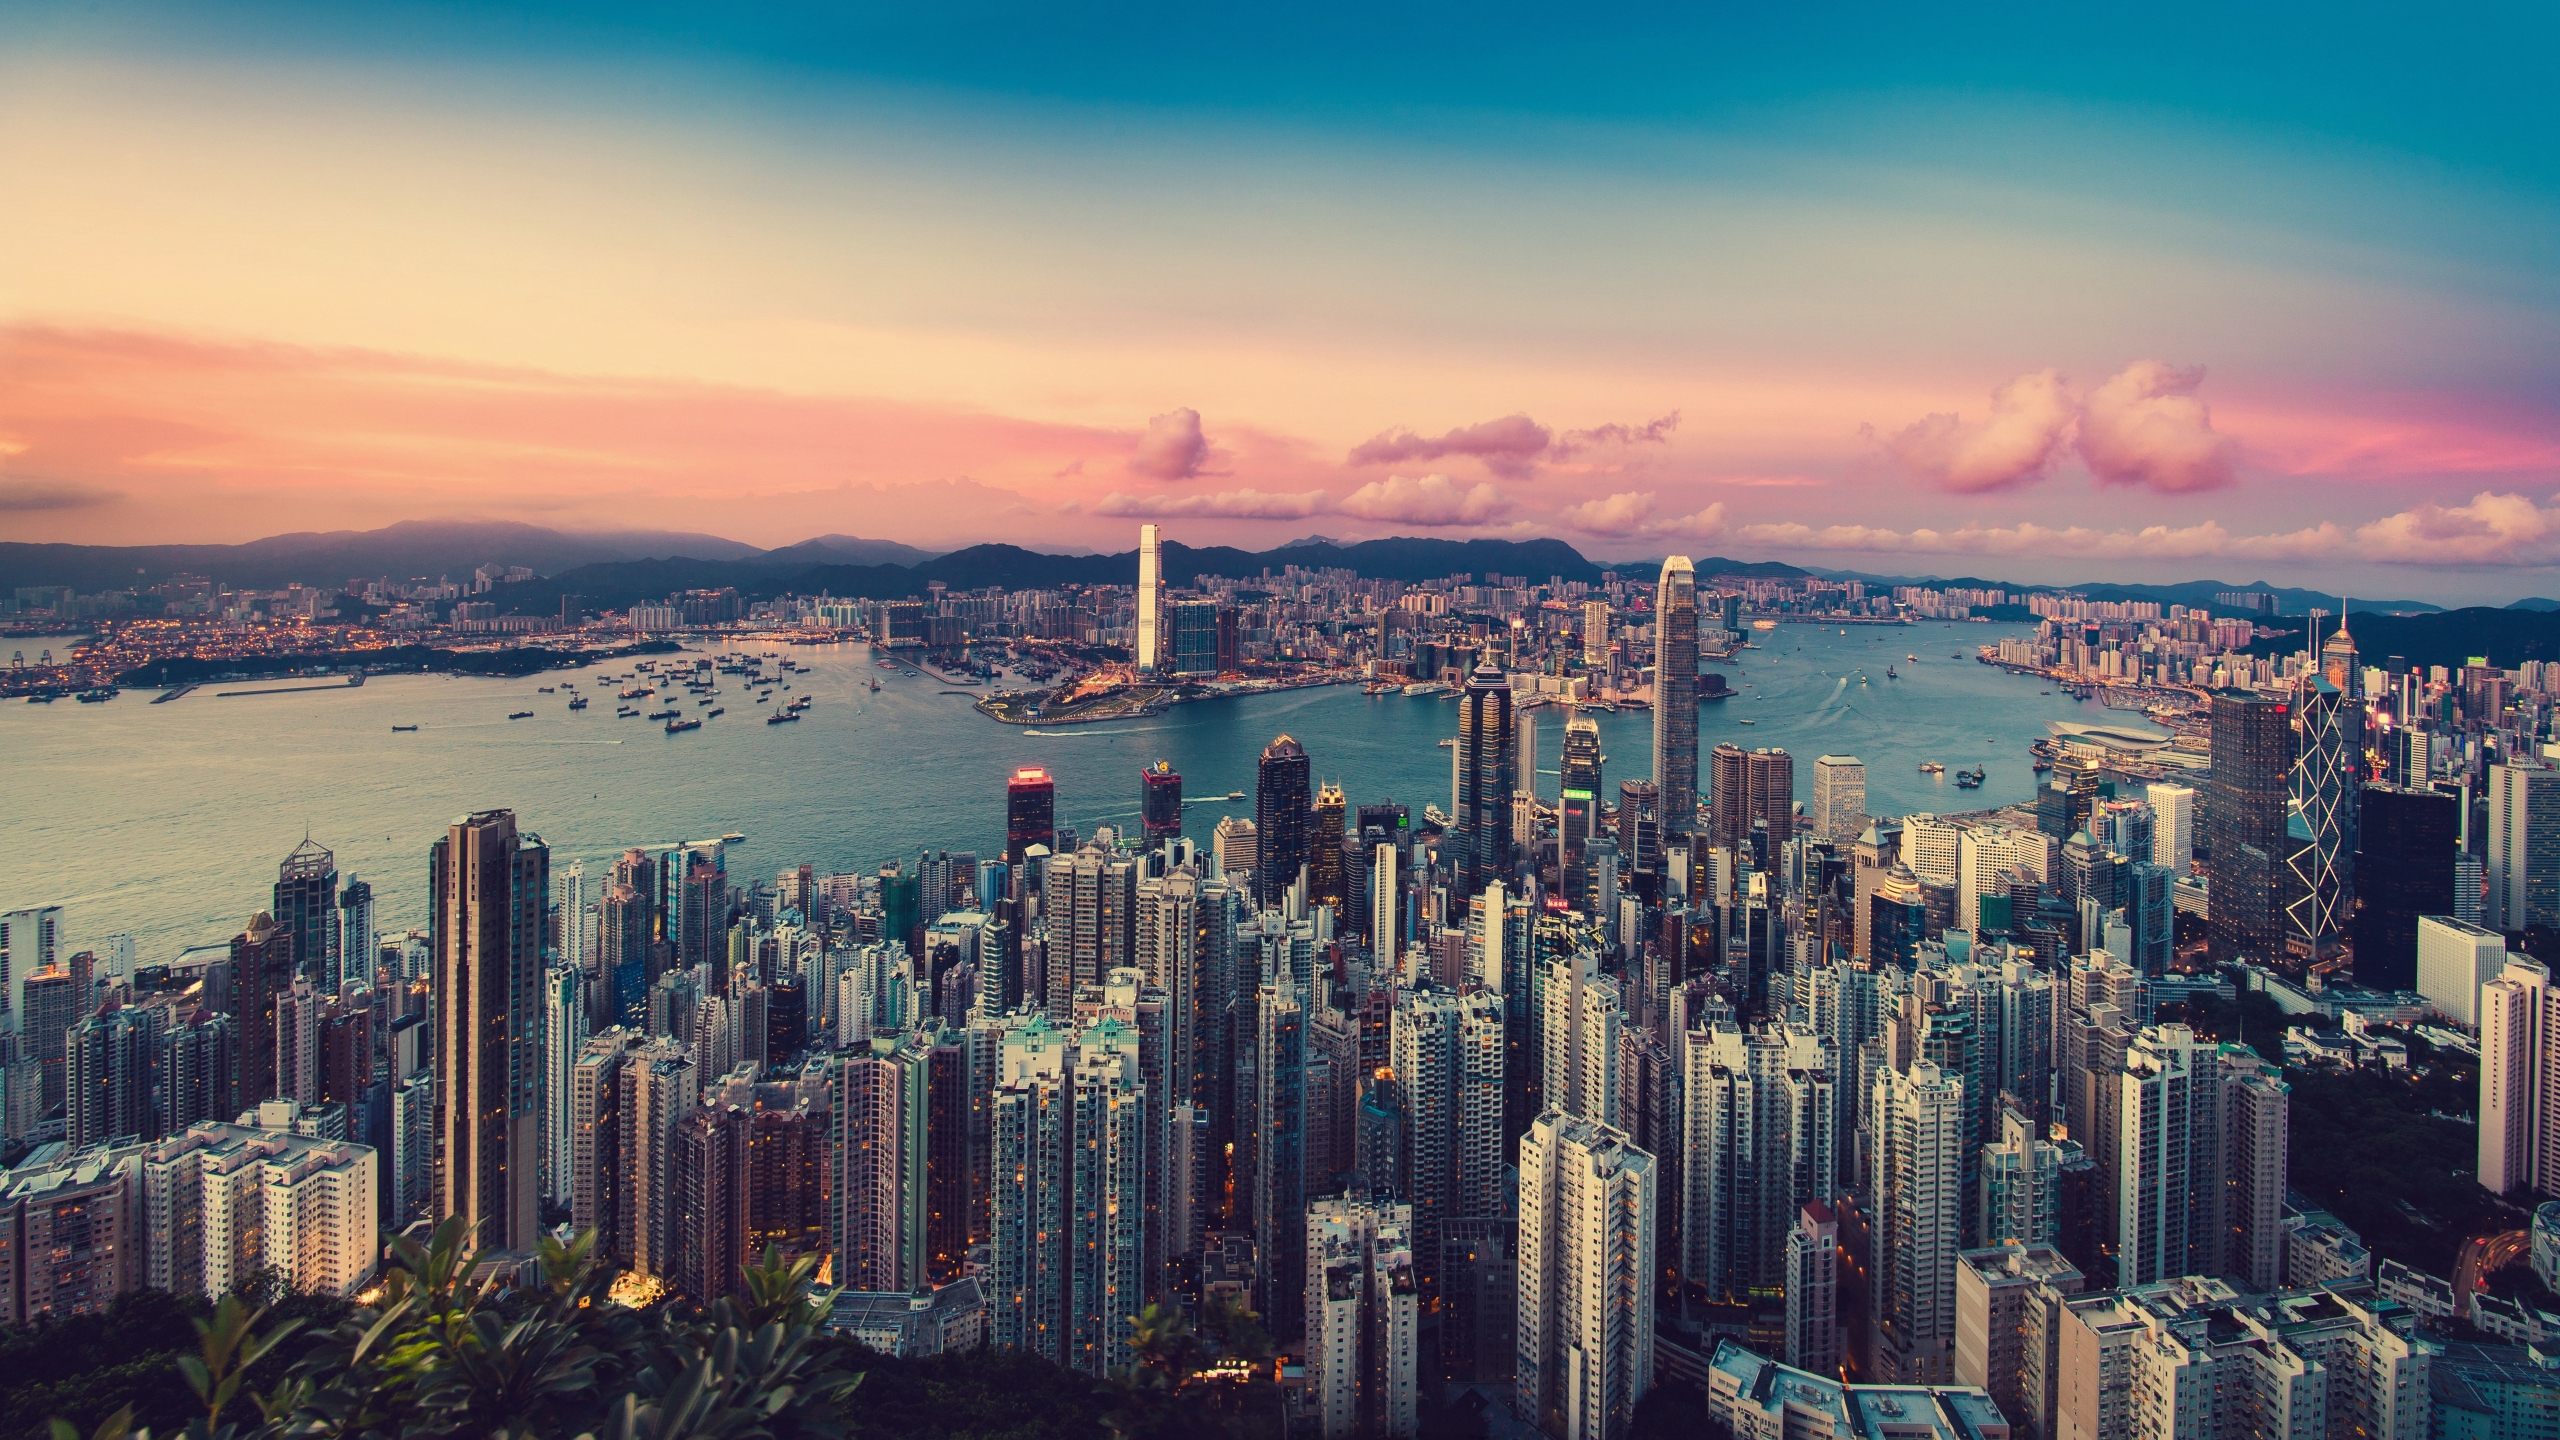 Hong Kong Image